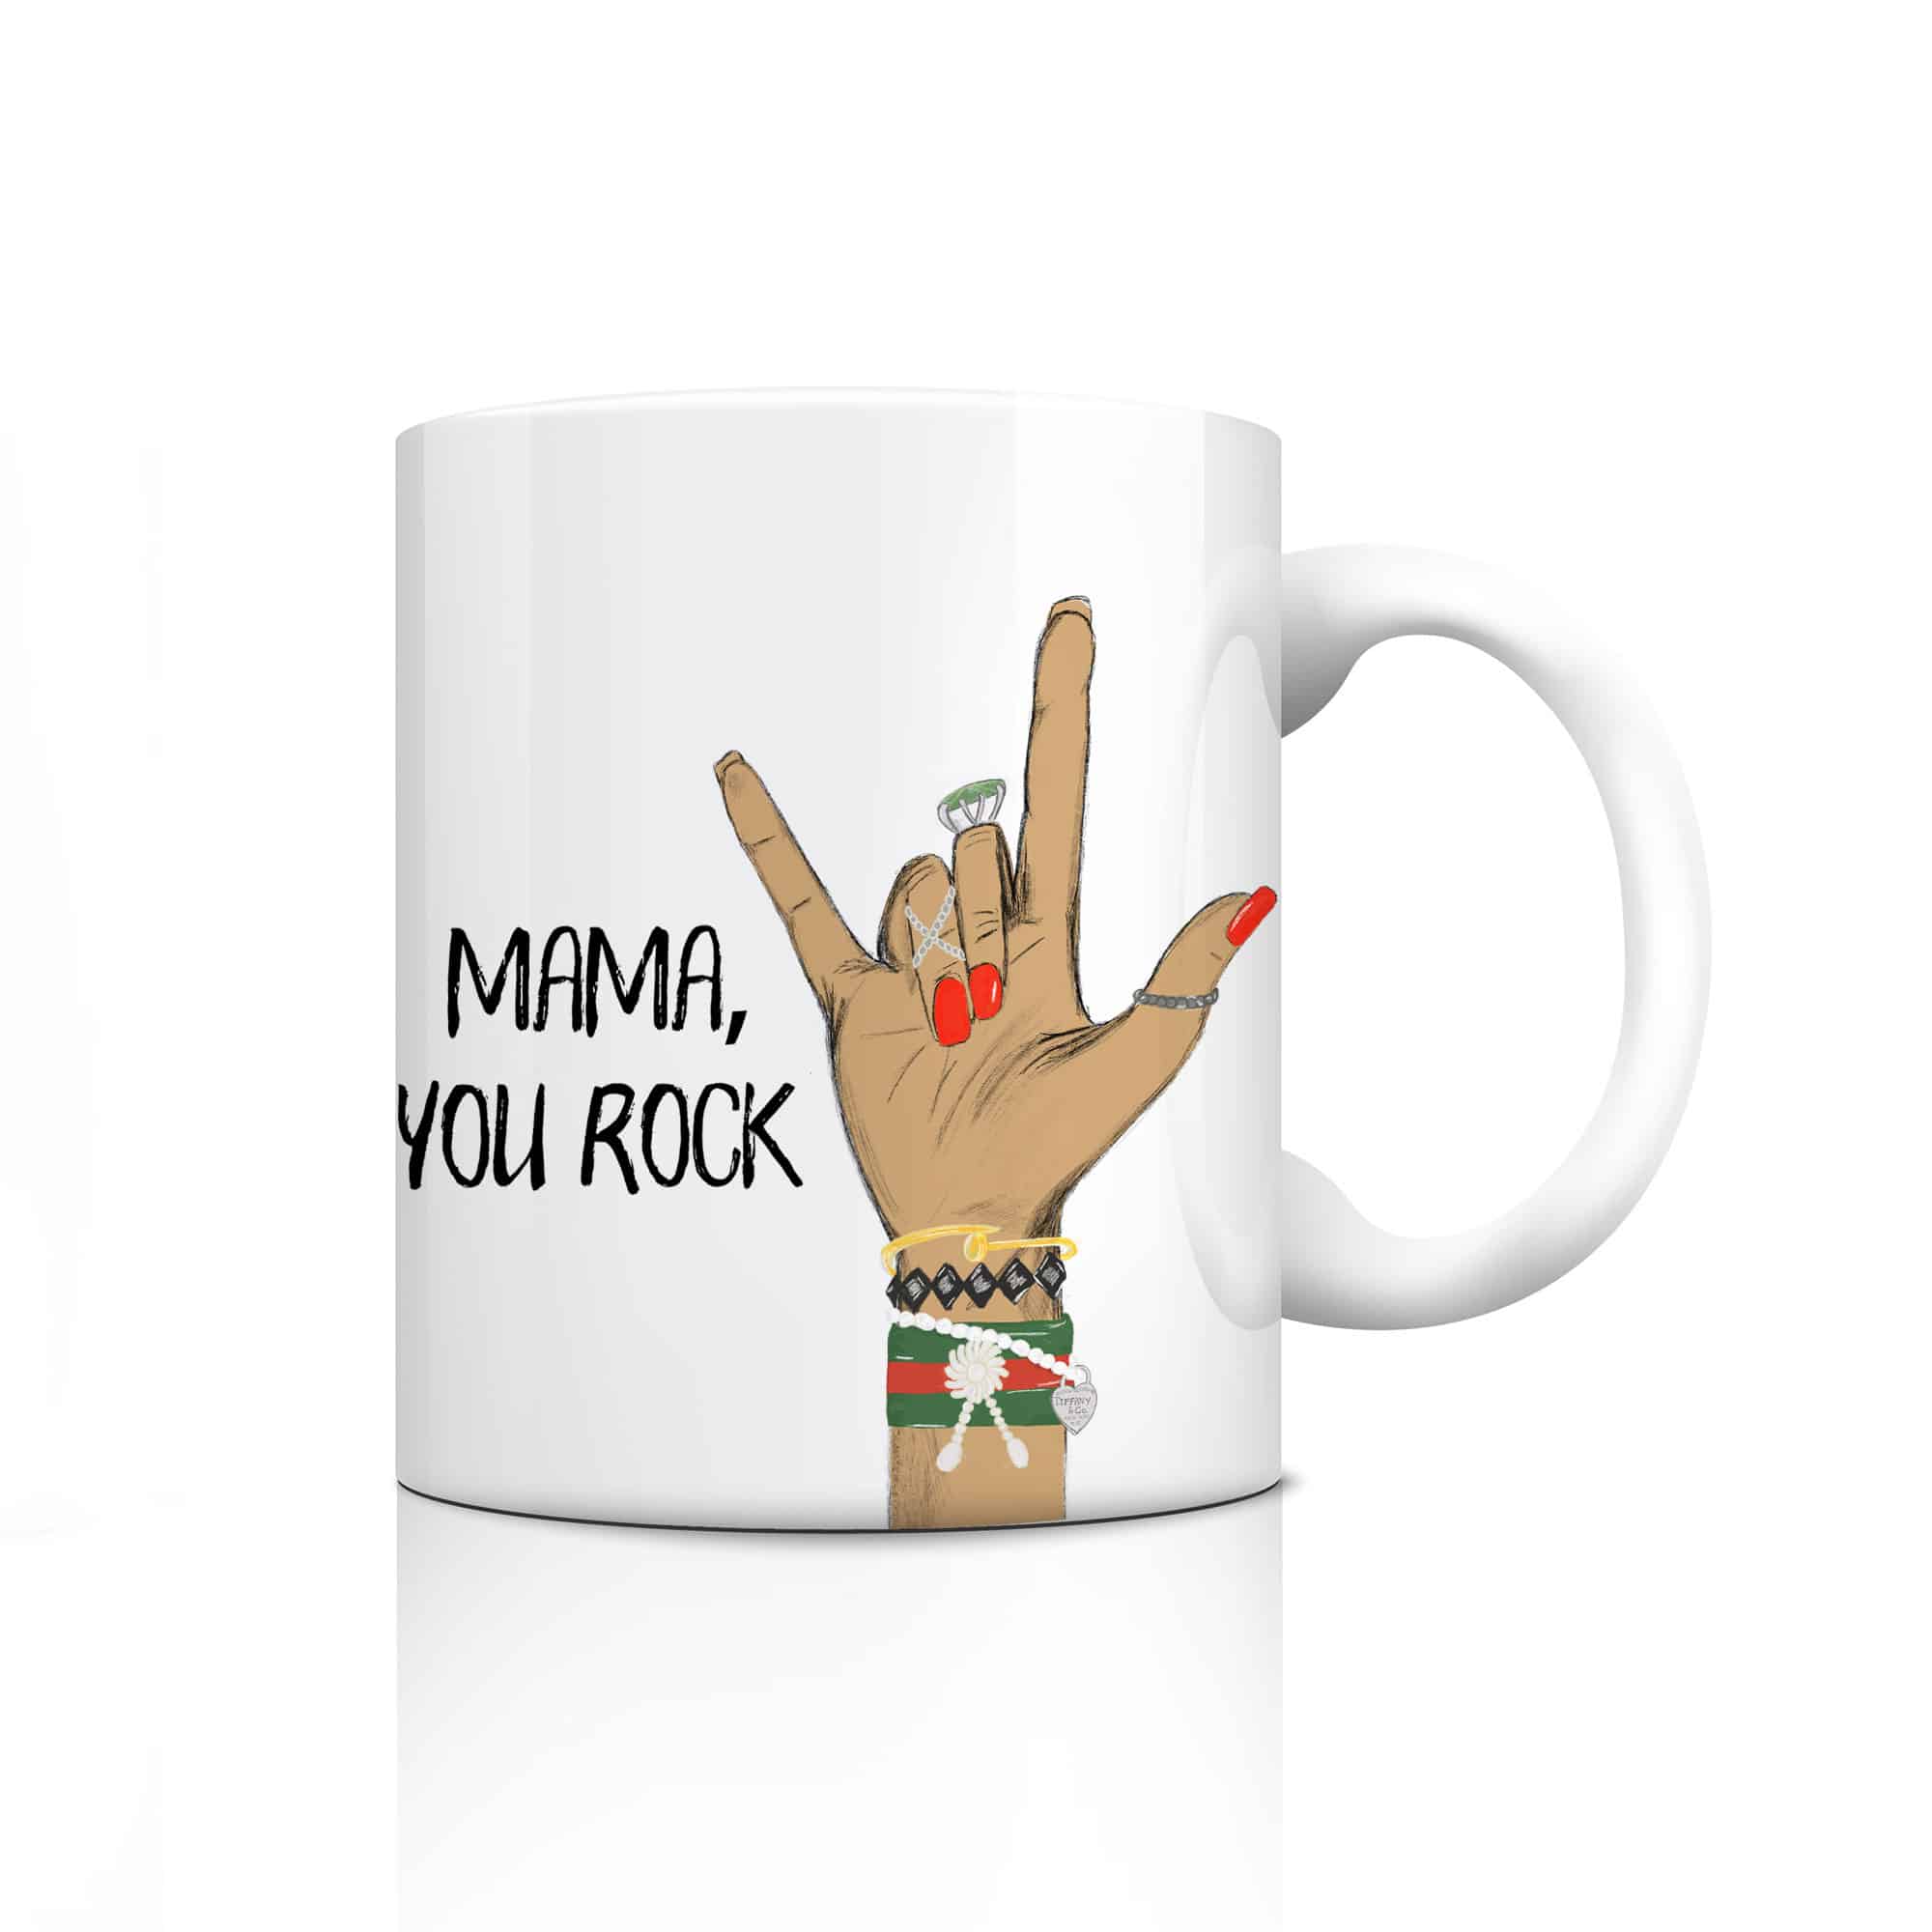 Tasse "Mama, you rock", tolle Geschenkidee zum Muttertag oder als Geburtstagsgeschenk für Mama